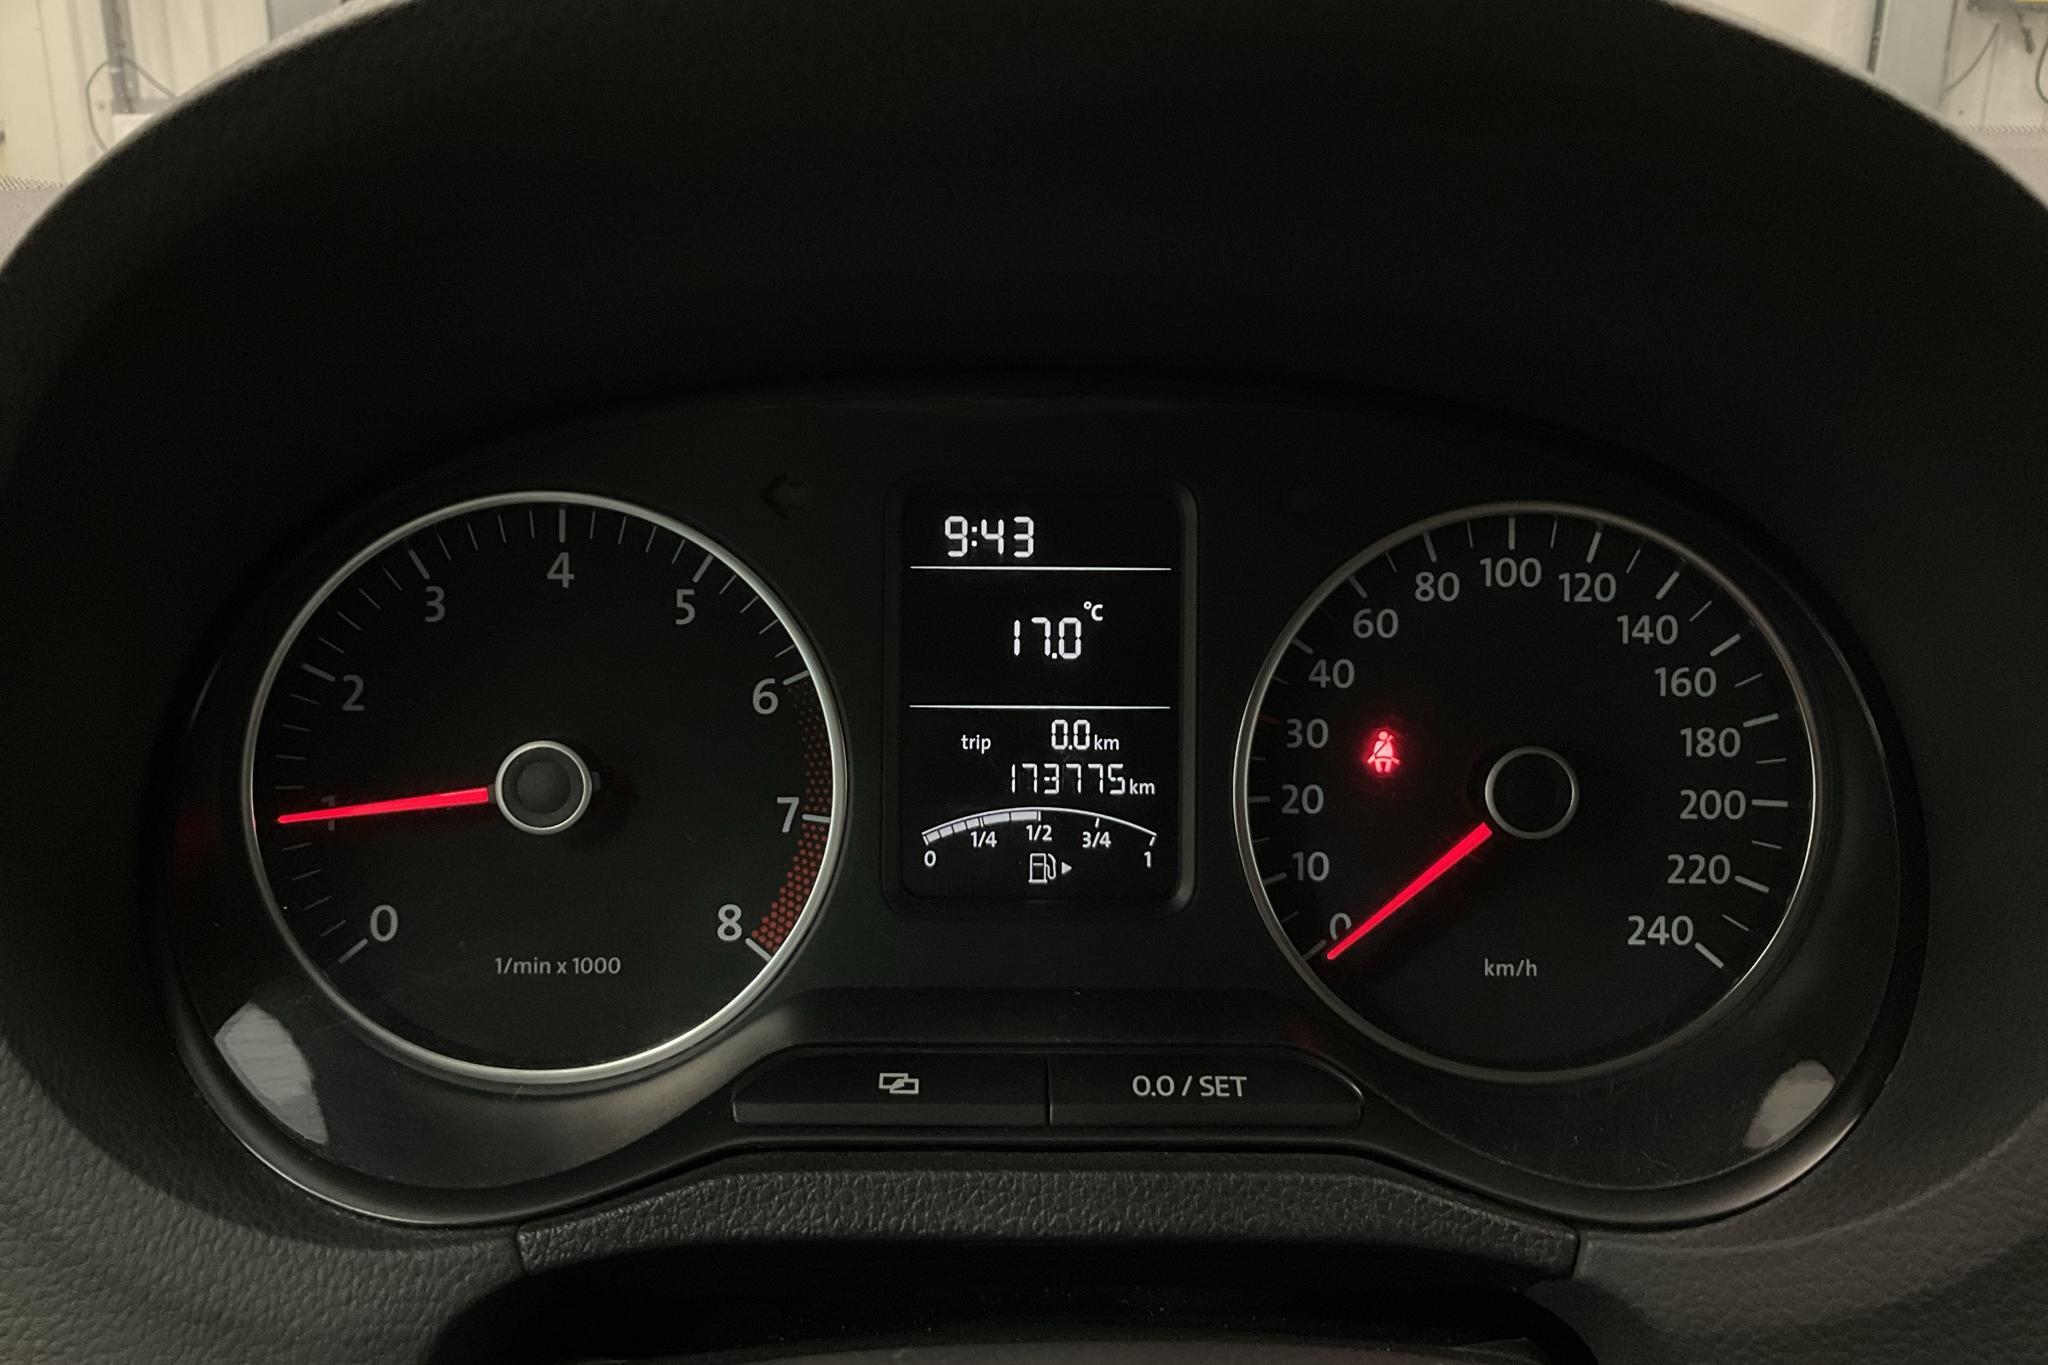 VW Polo 1.4 5dr (85hk) - 17 378 mil - Manuell - vit - 2011